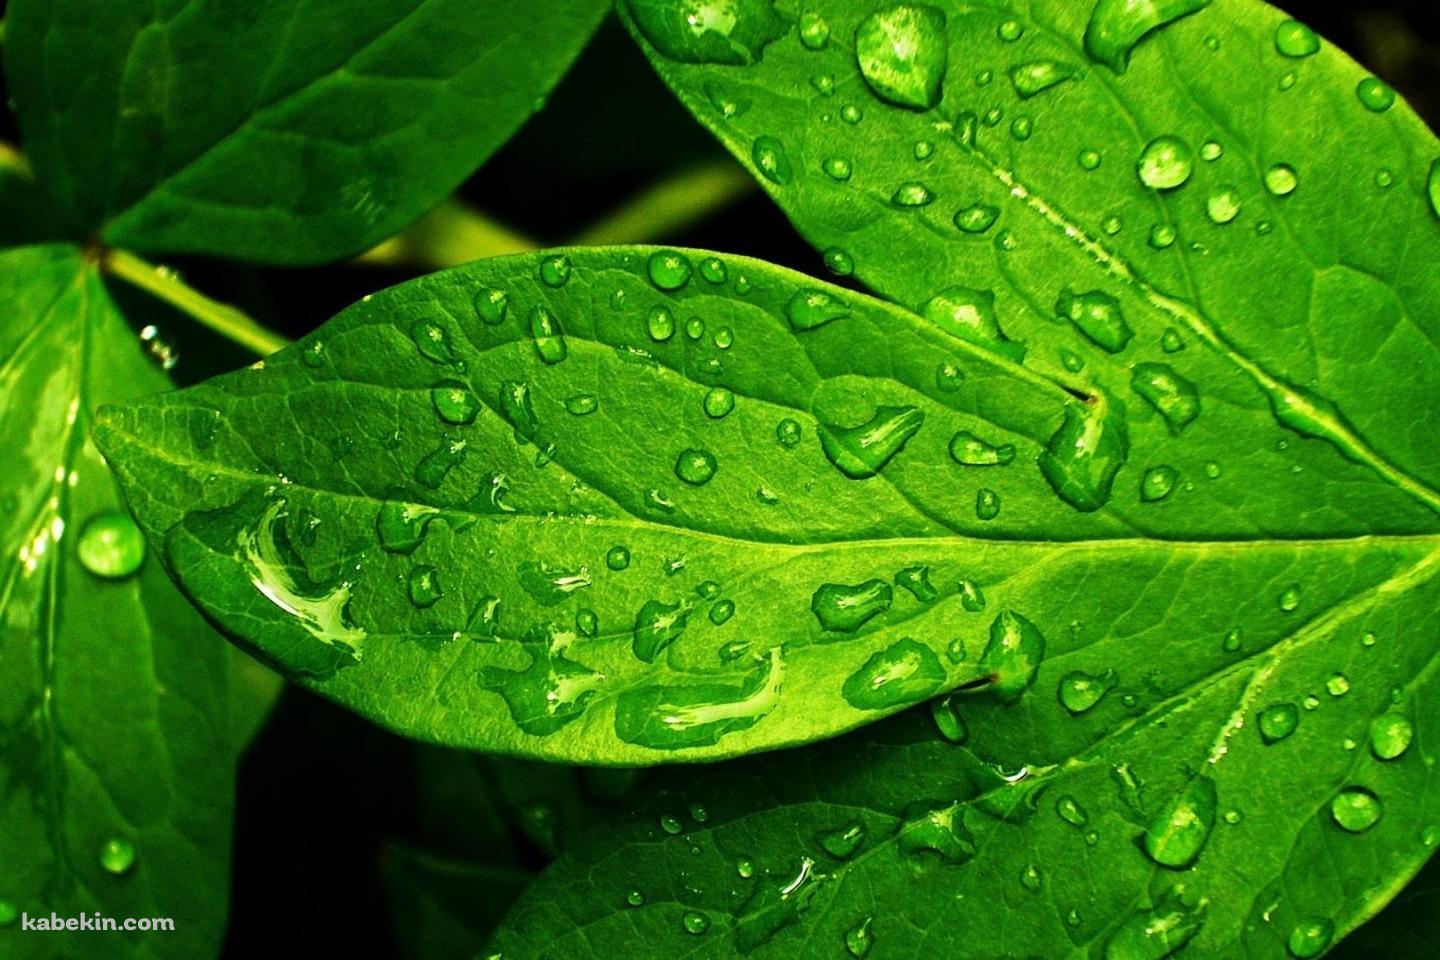 雨露のついた綺麗な緑の葉の壁紙(1440px x 960px) 高画質 PC・デスクトップ用